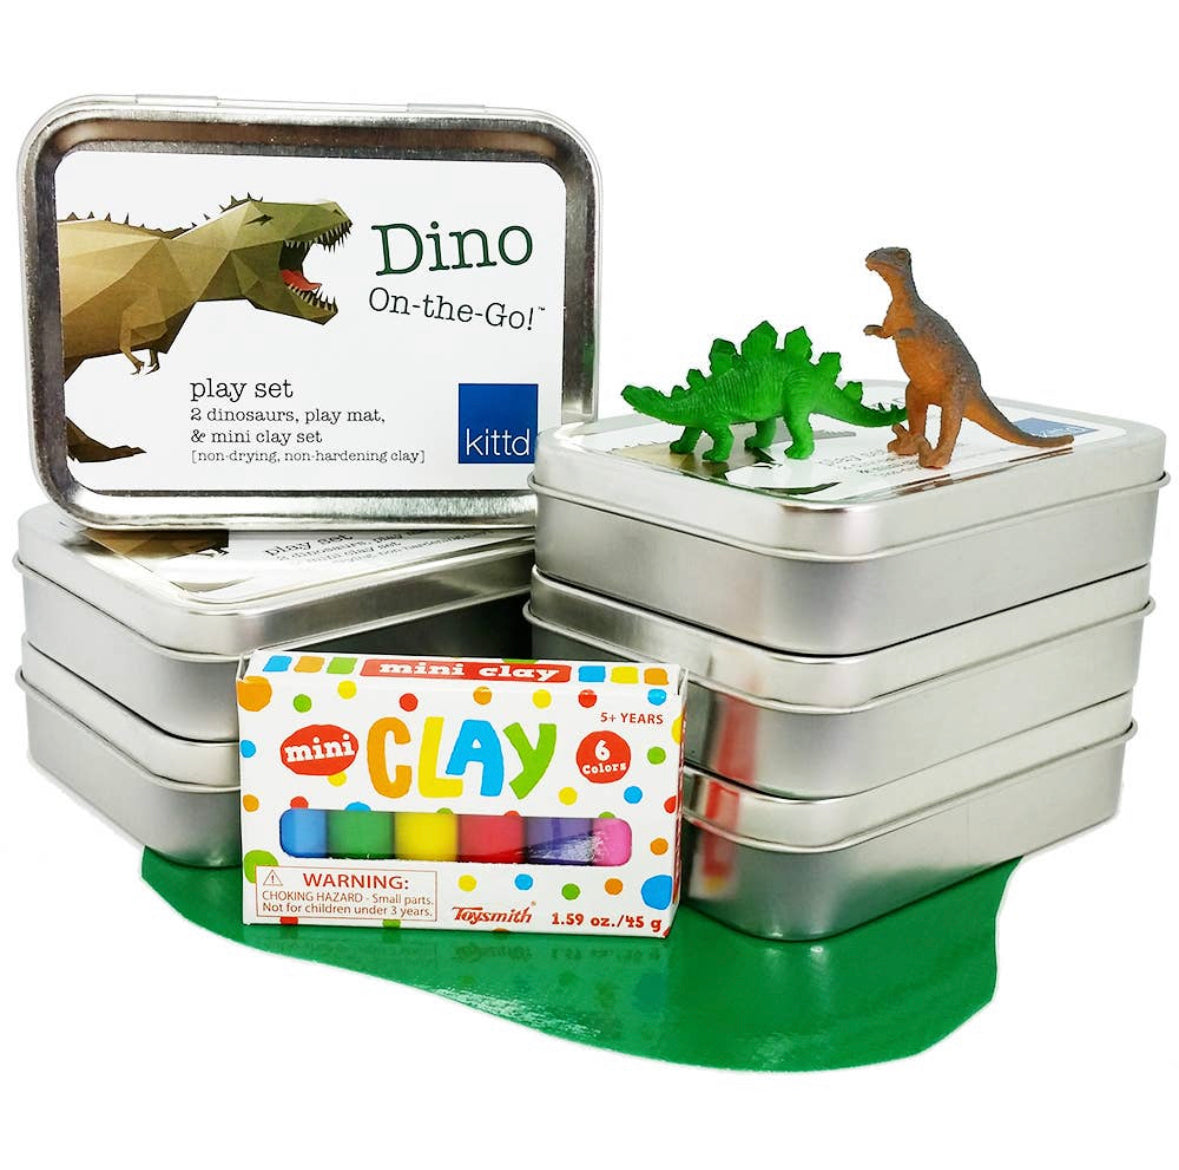 Dino On-the-Go Play Set